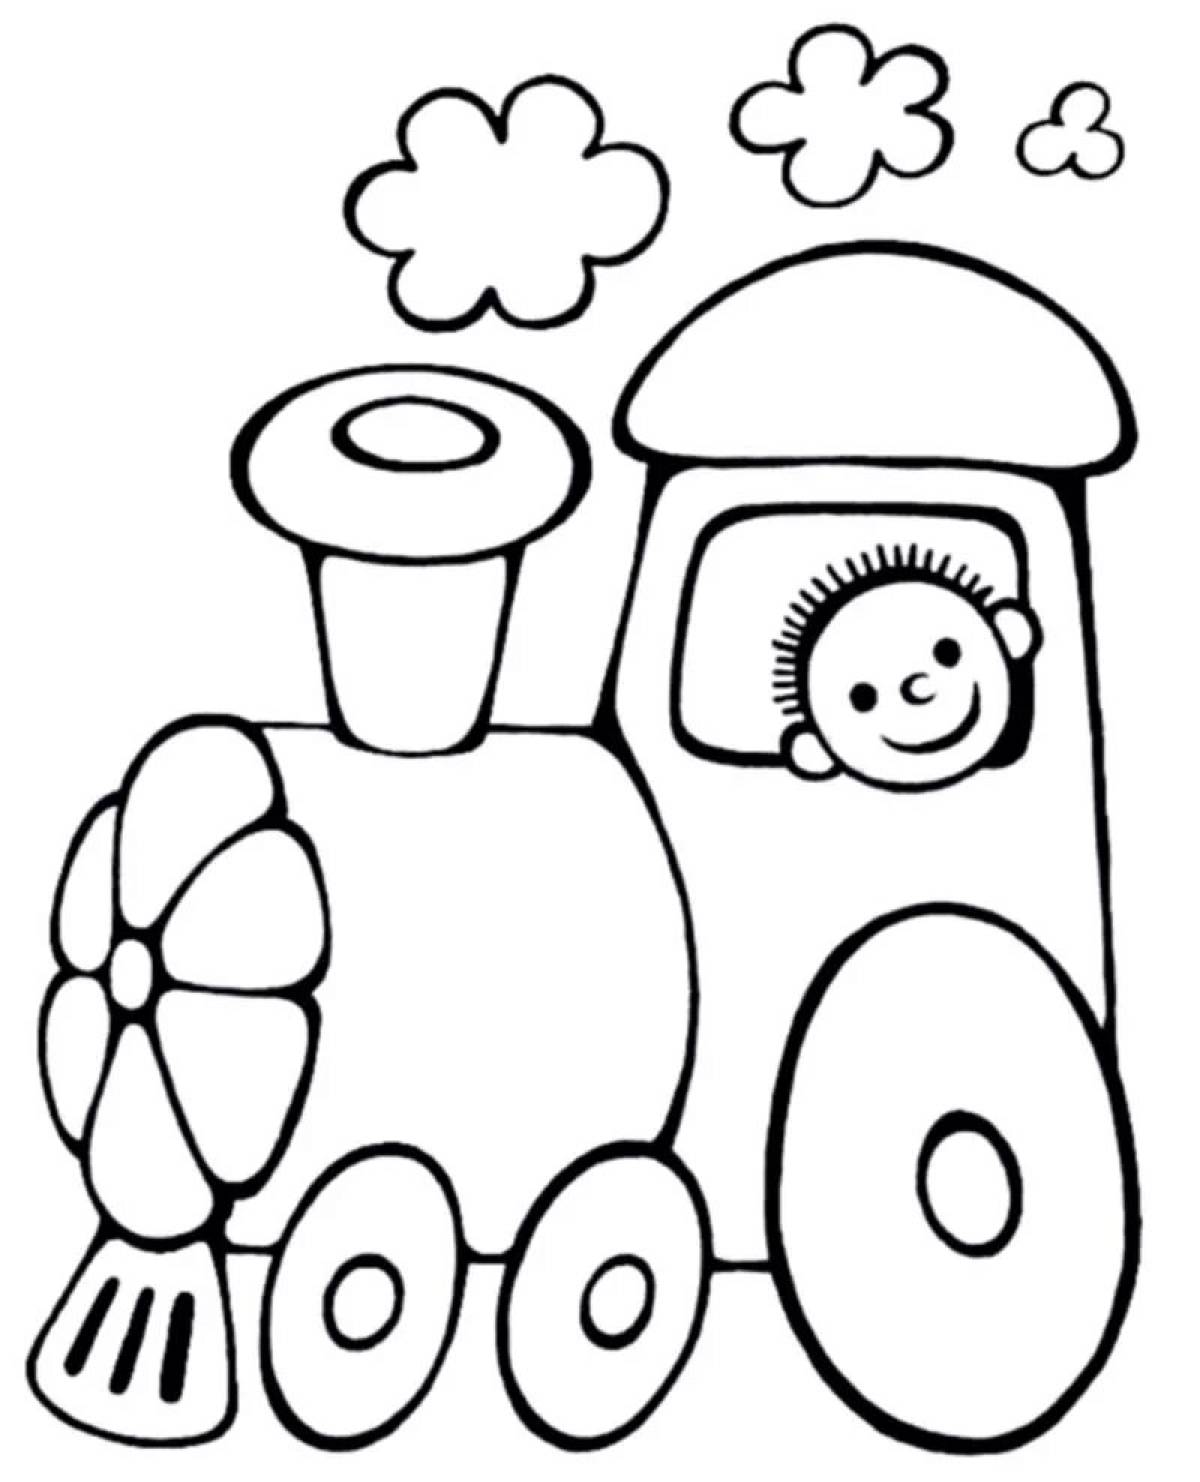 Раскраска для детей 3-4 года поезд, паровозик распечатать